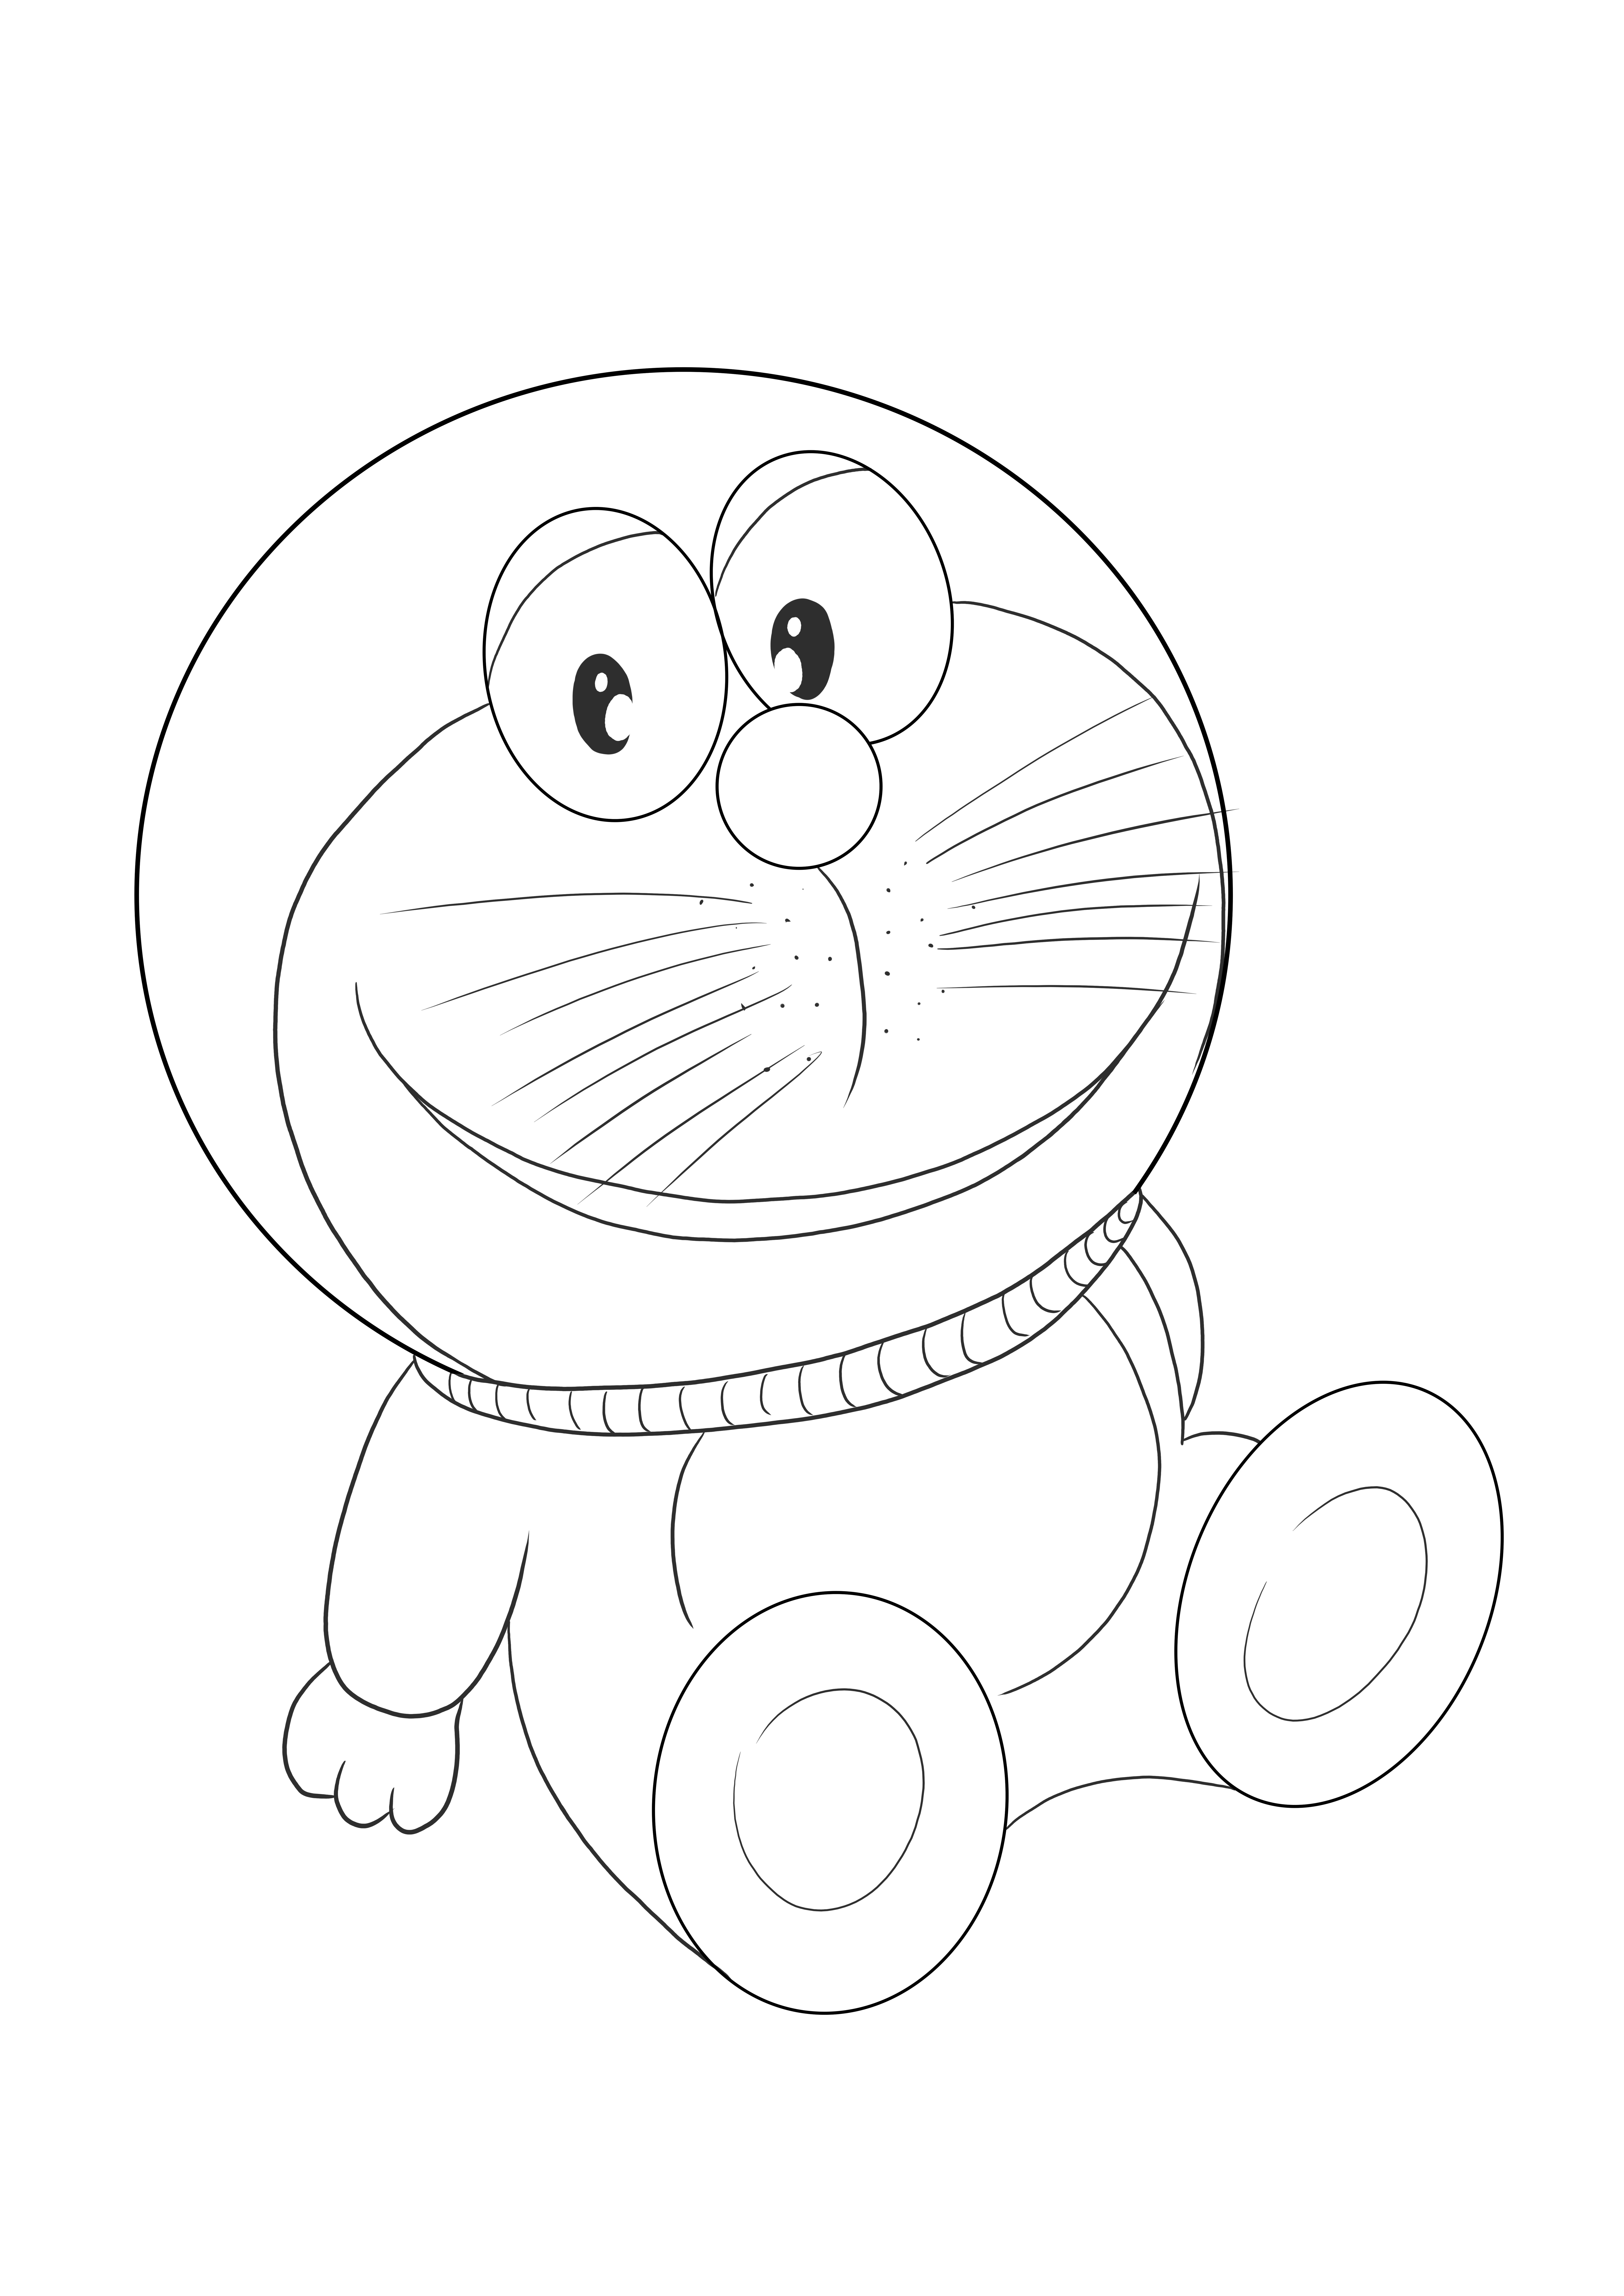 Doraemon bezpłatny obraz do druku do kolorowania dla dzieci